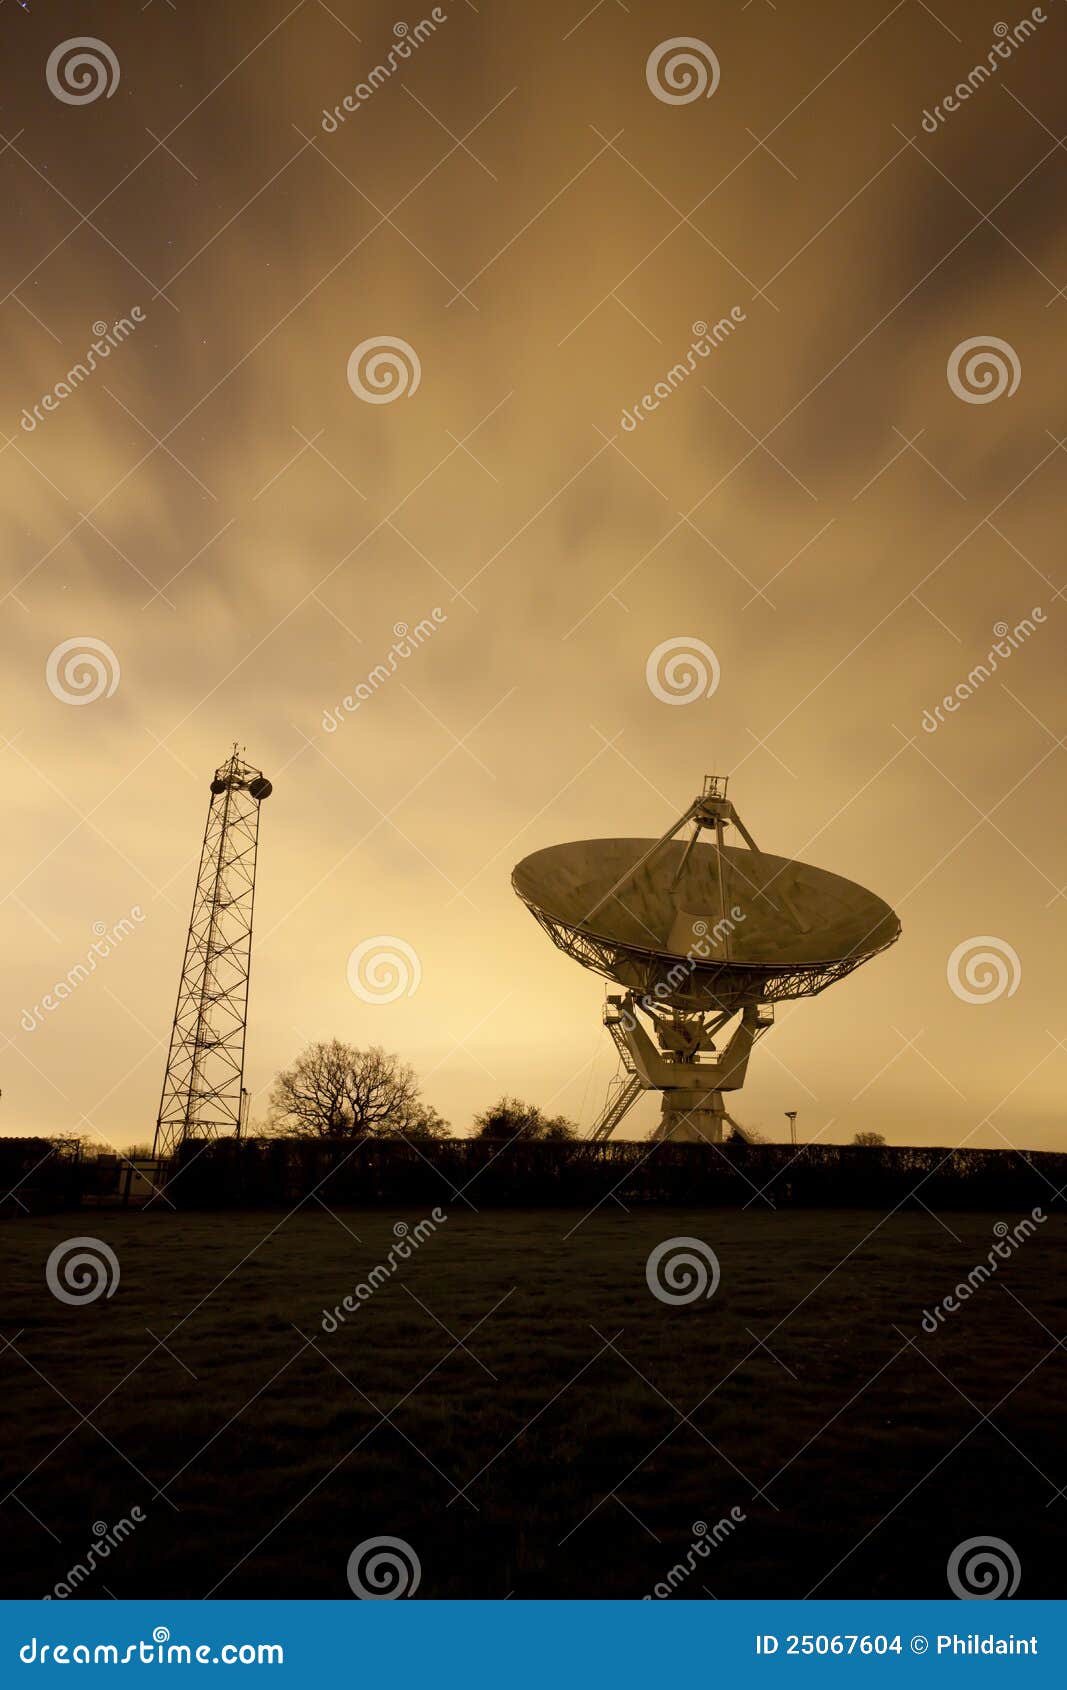 satellite dish at night